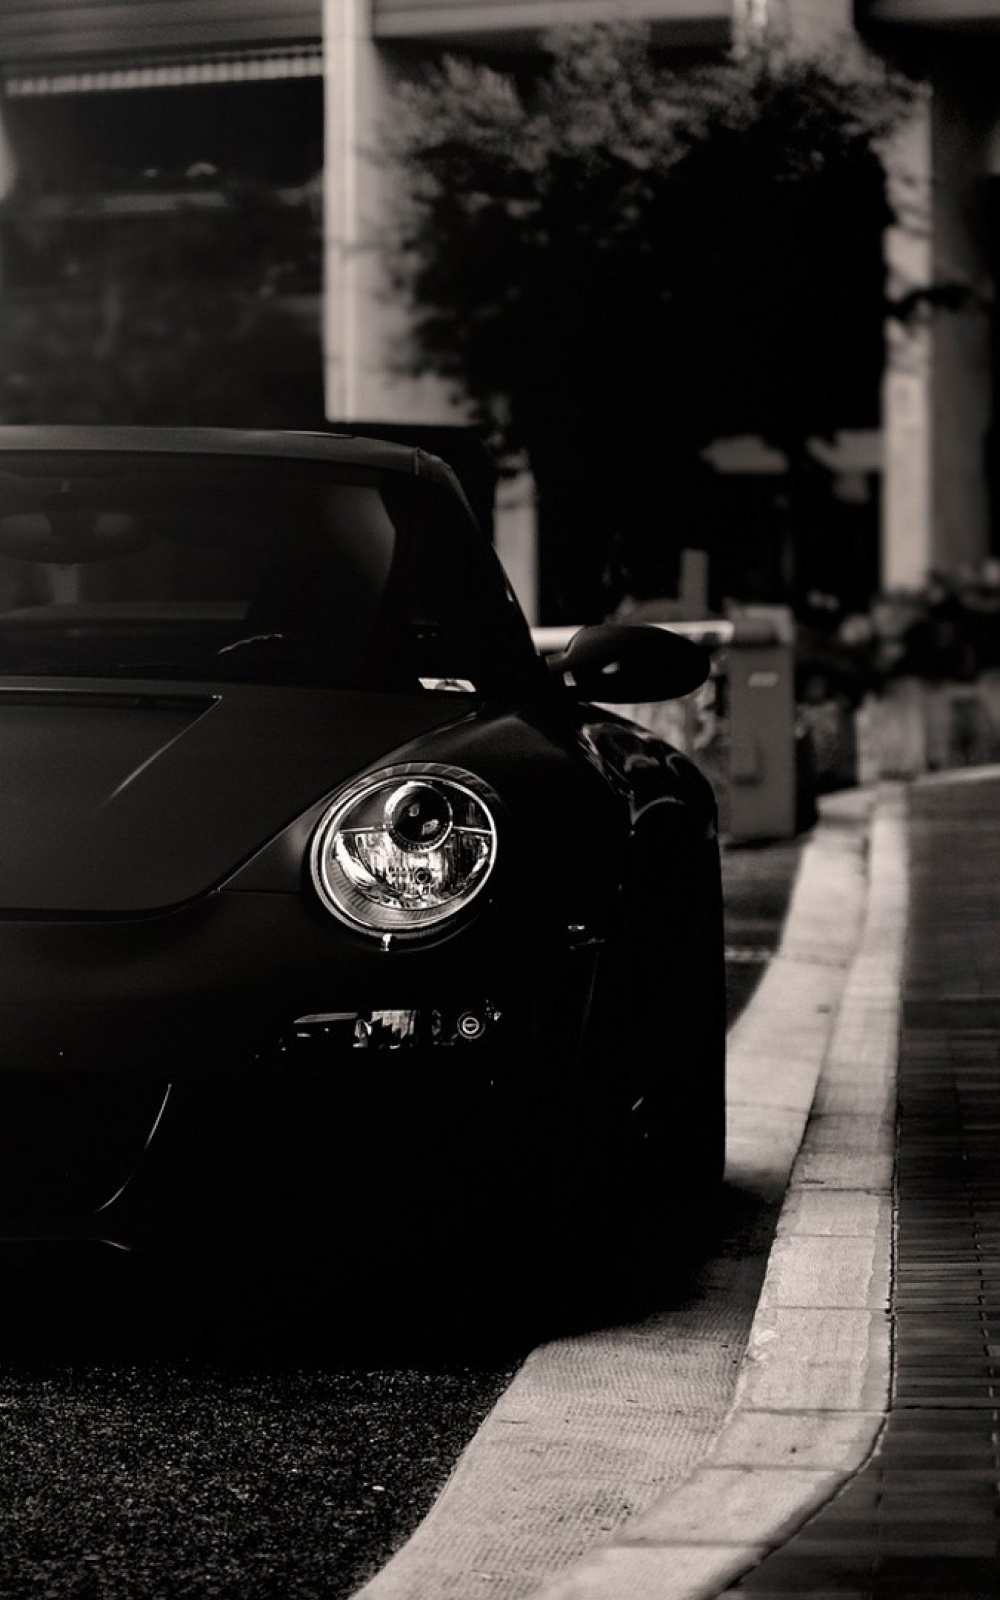 Hình nền Porsche 911 đen trắng dành cho Android sẽ làm bạn phải trầm trồ với sự tinh tế và đẳng cấp của thiết kế. Hãy lựa chọn một hình nền độc đáo và đẹp mắt cho chiếc điện thoại của bạn ngay hôm nay.